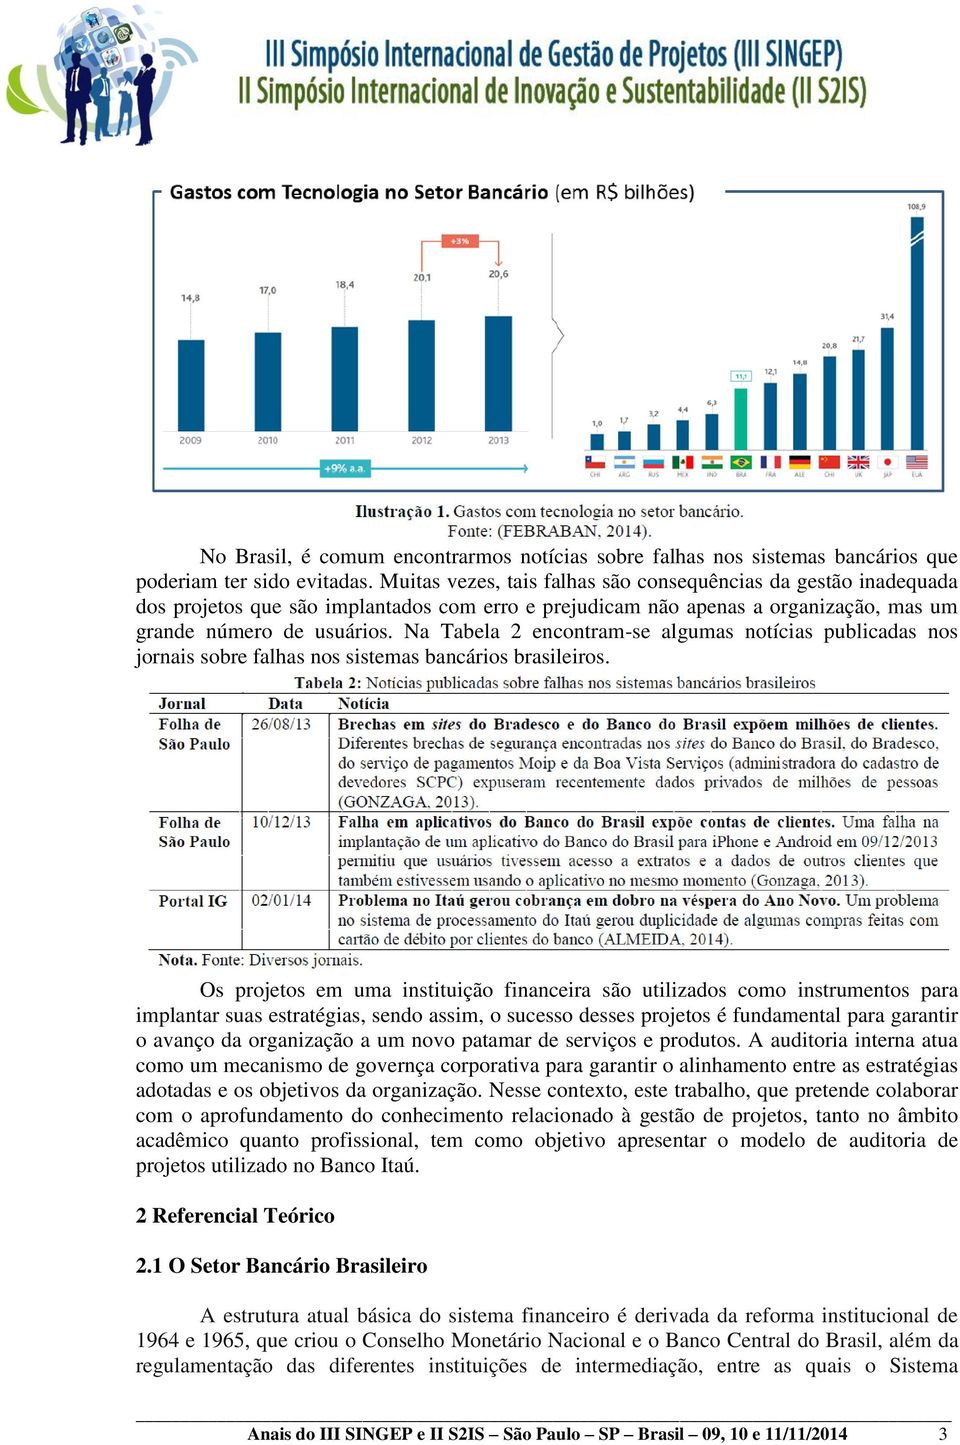 Na Tabela 2 encontram-se algumas notícias publicadas nos jornais sobre falhas nos sistemas bancários brasileiros.